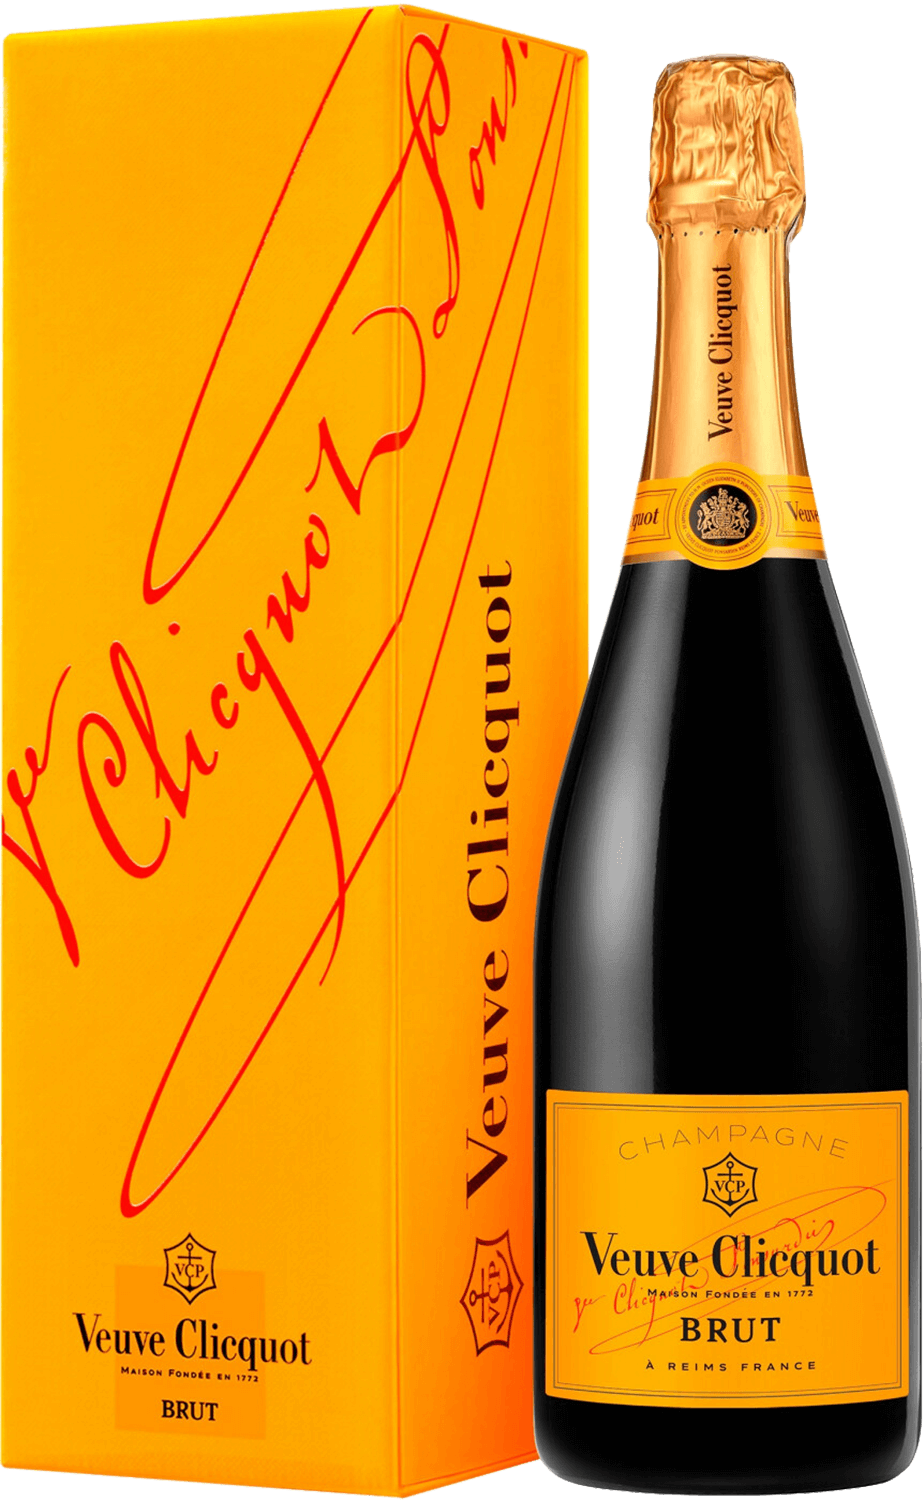 Ponsardin Brut NV Veuve Clicquot (gift box) veuve clicquot ponsardin champagne aoc brut